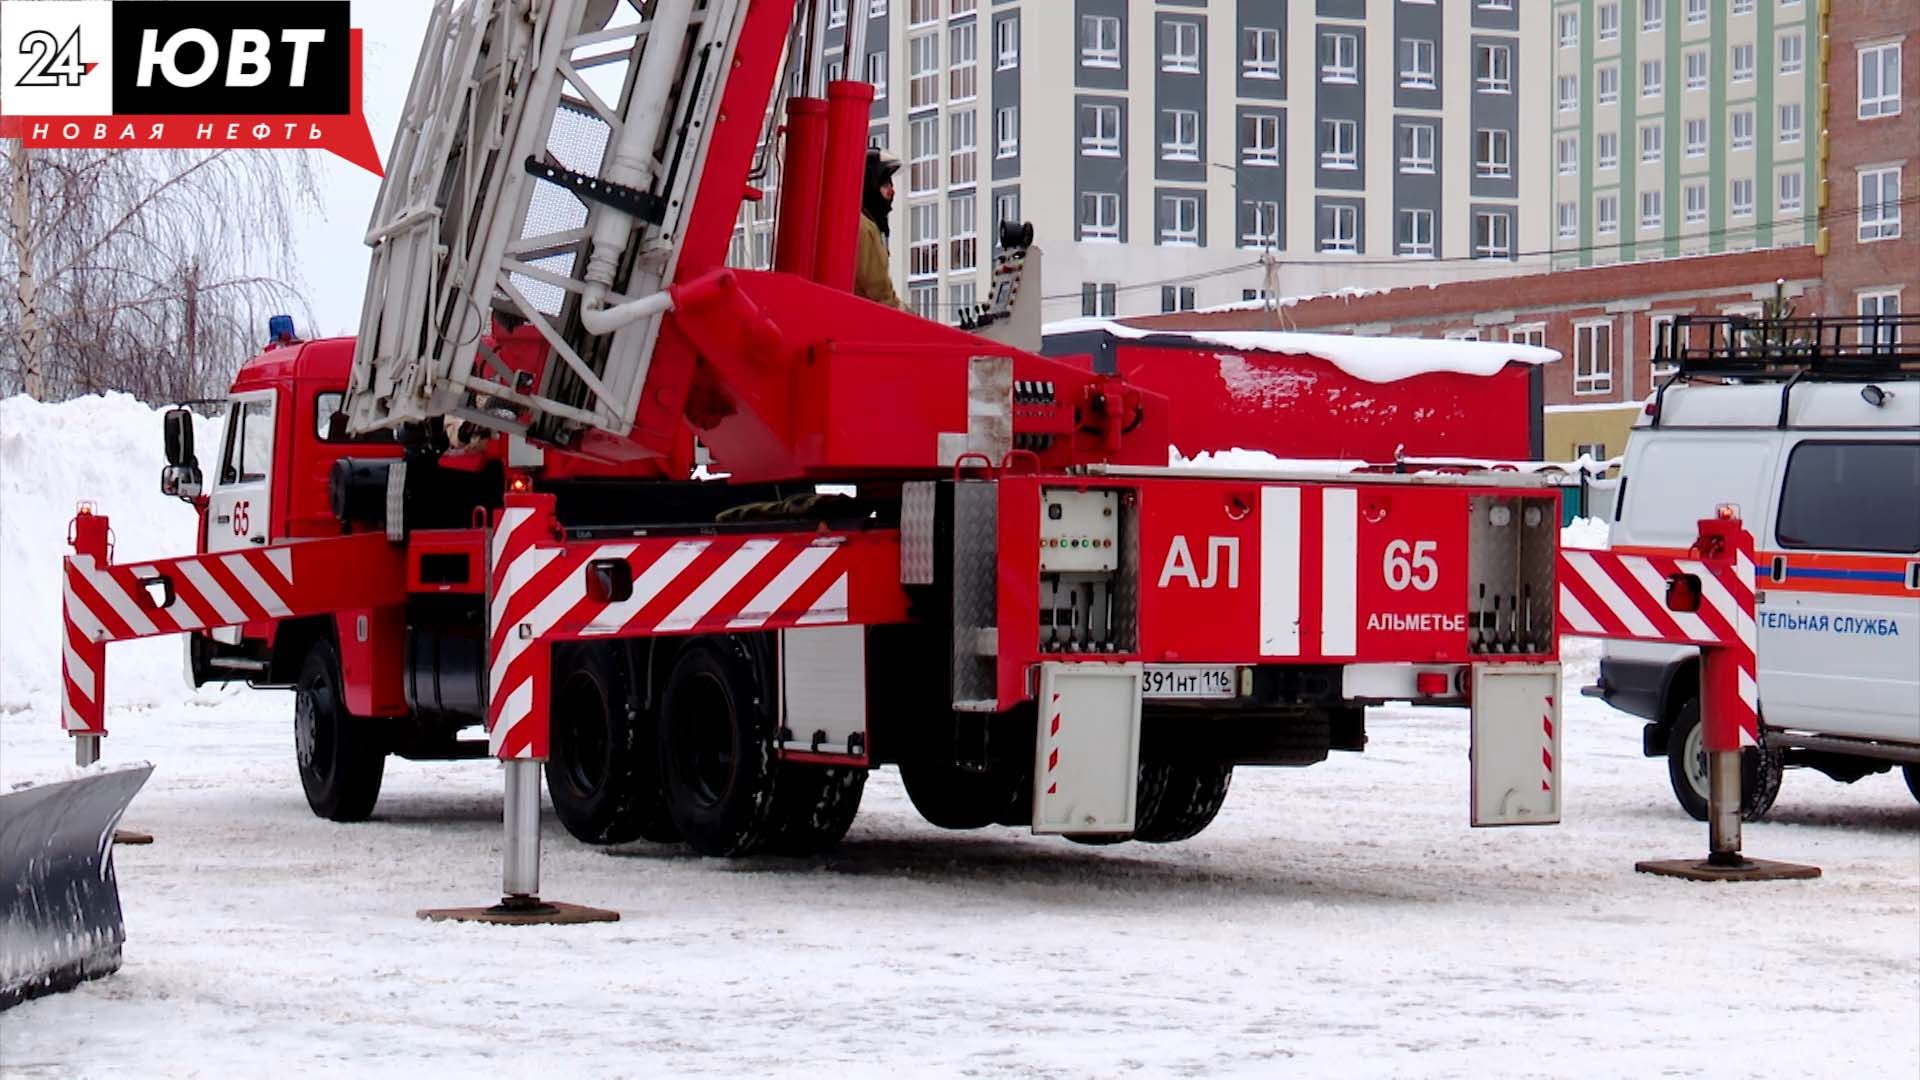 Добровольным пожарным подразделениям в Альметьевске передали новые цистерны